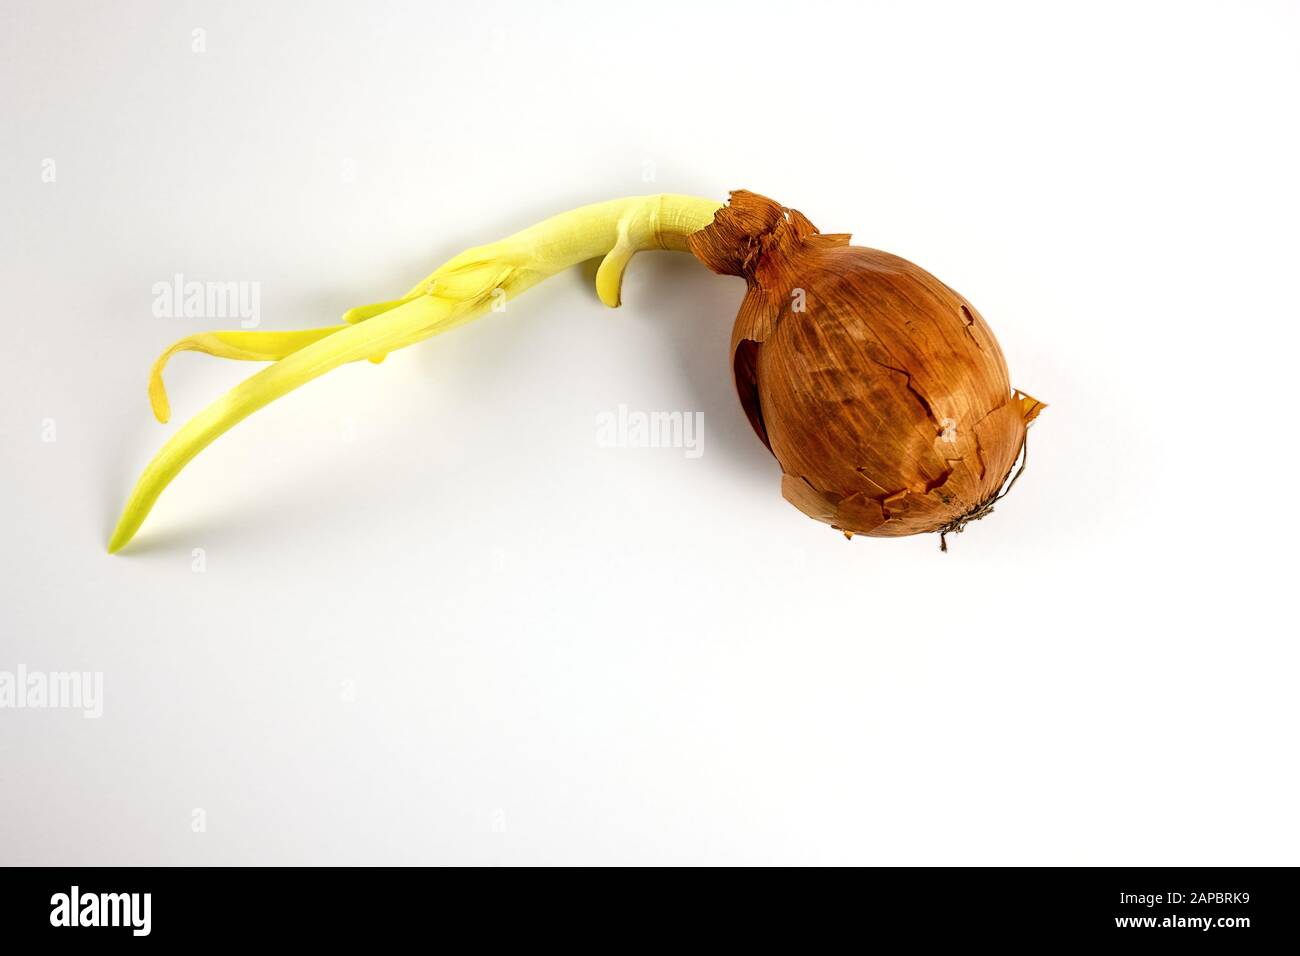 Cipolla germogliata con buccia marrone isolata su fondo bianco Foto Stock